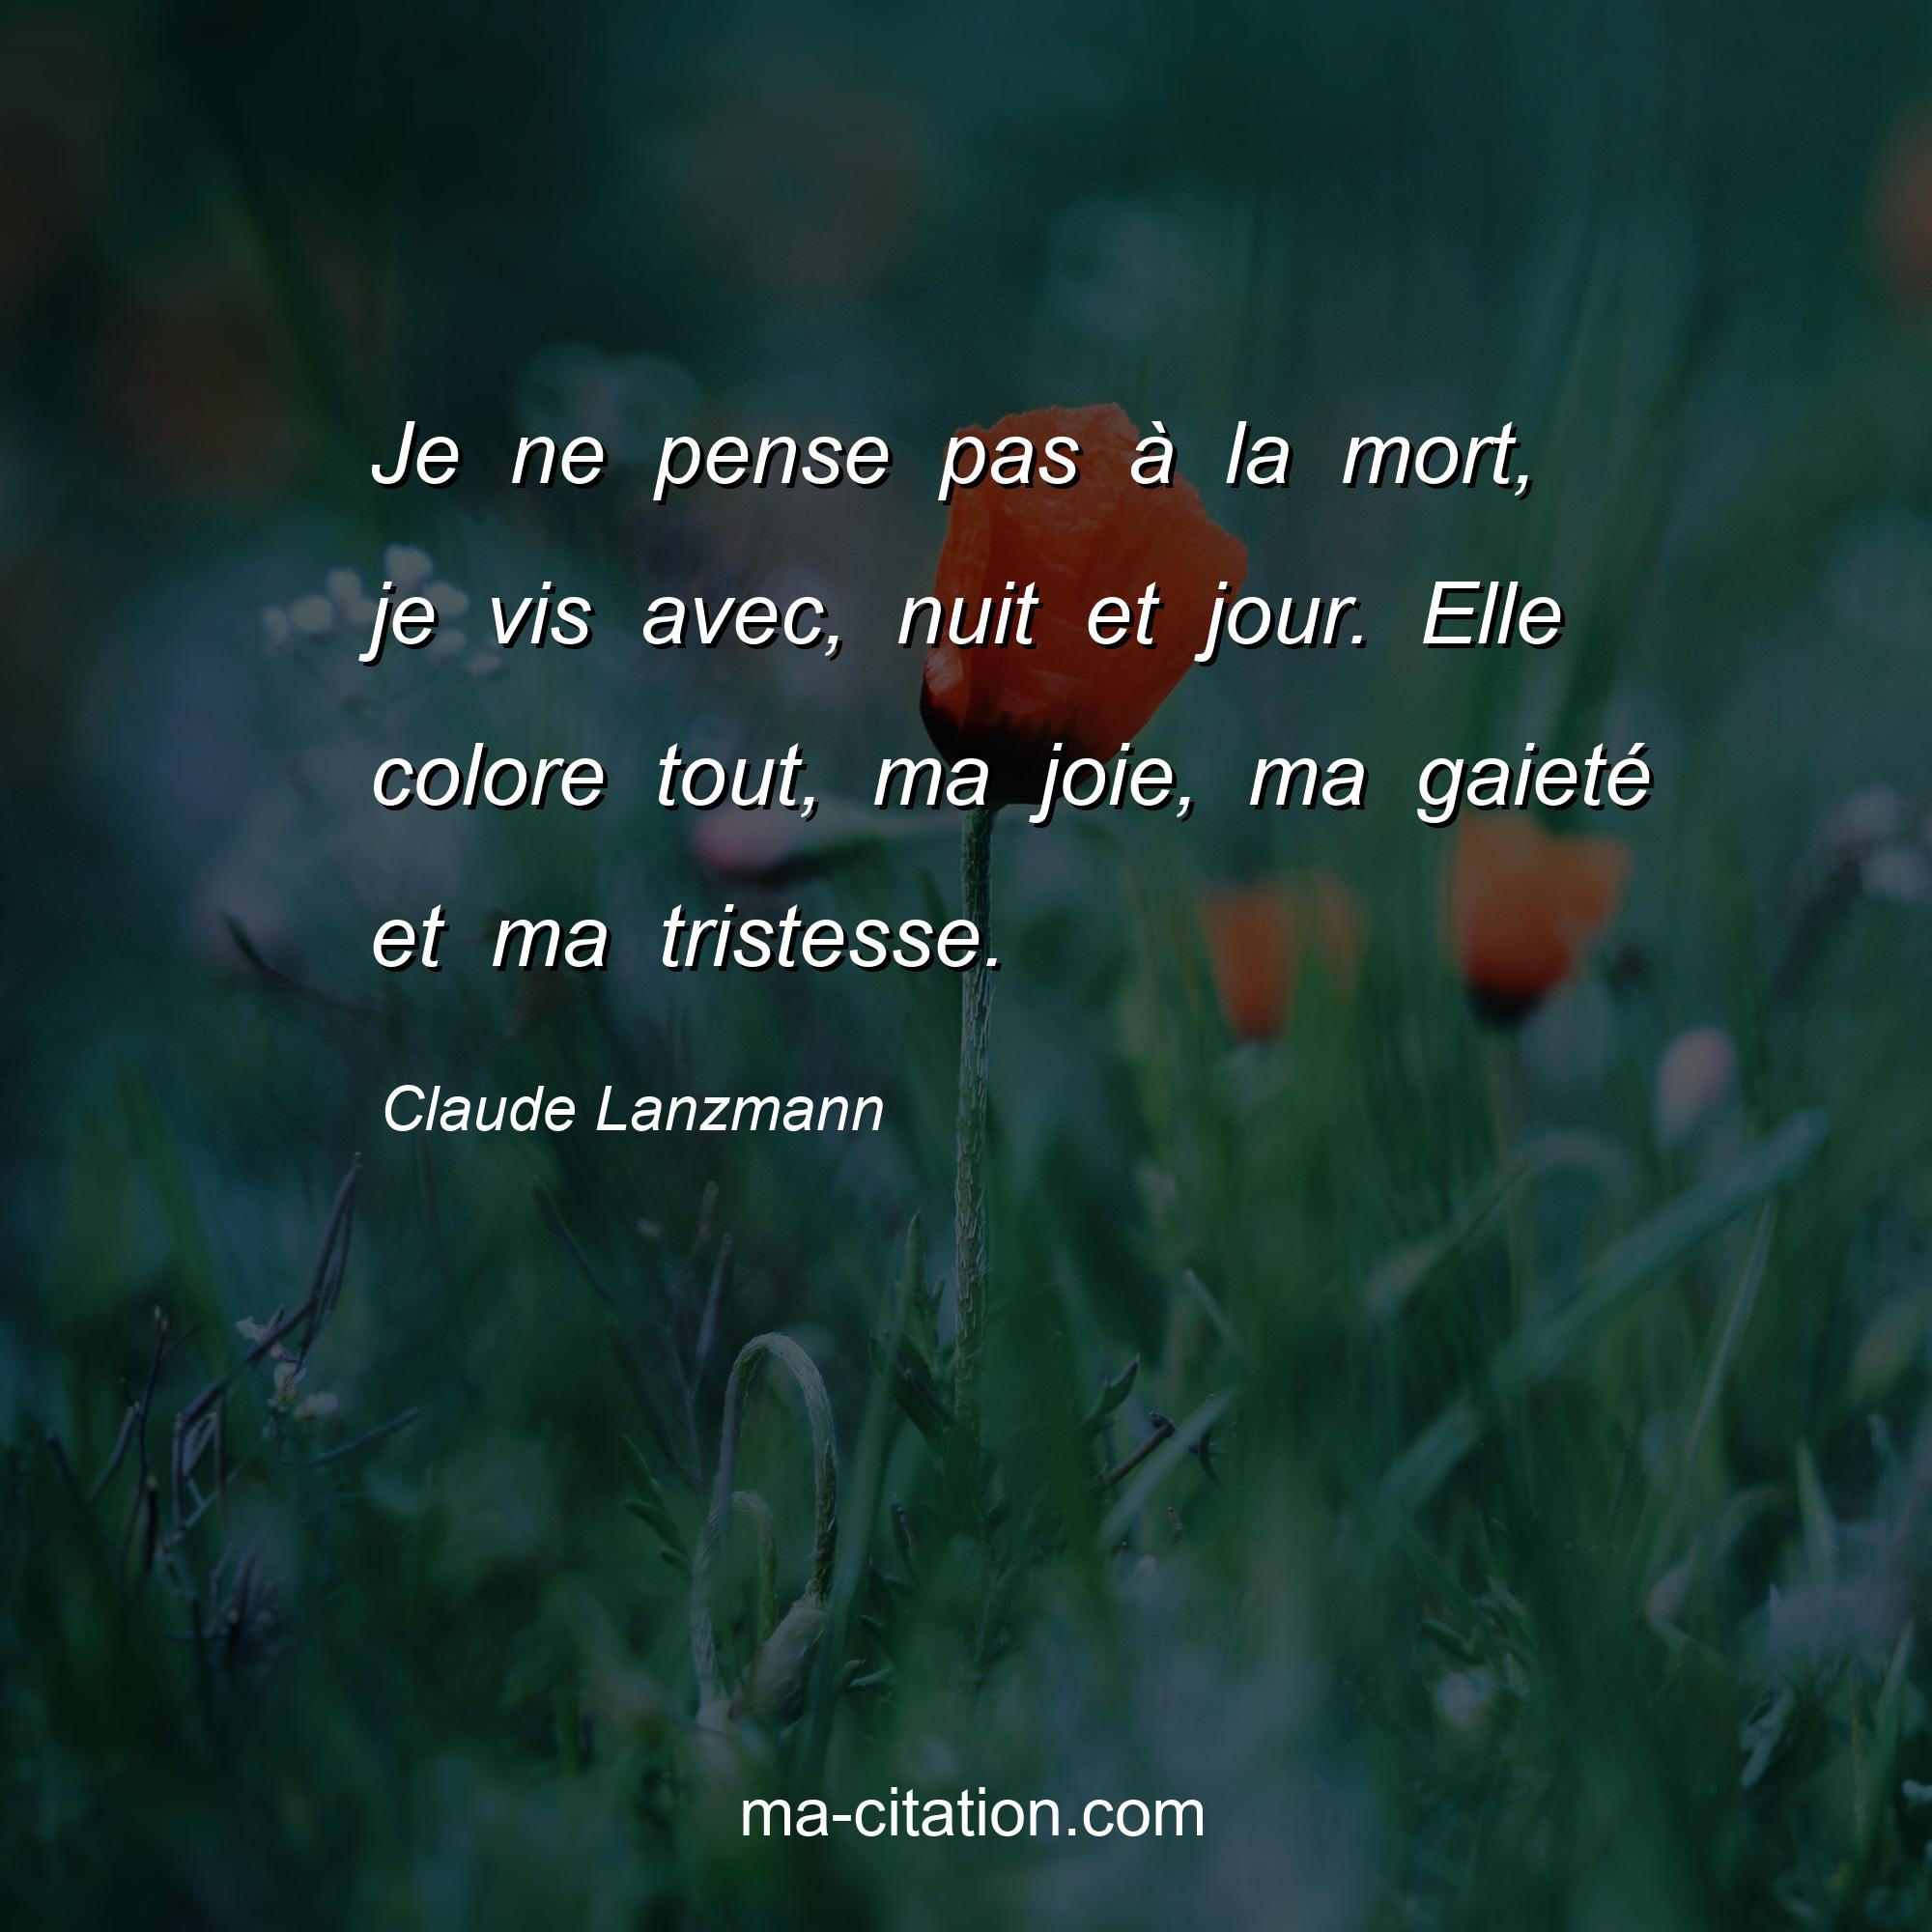 Claude Lanzmann : Je ne pense pas à la mort, je vis avec, nuit et jour. Elle colore tout, ma joie, ma gaieté et ma tristesse.